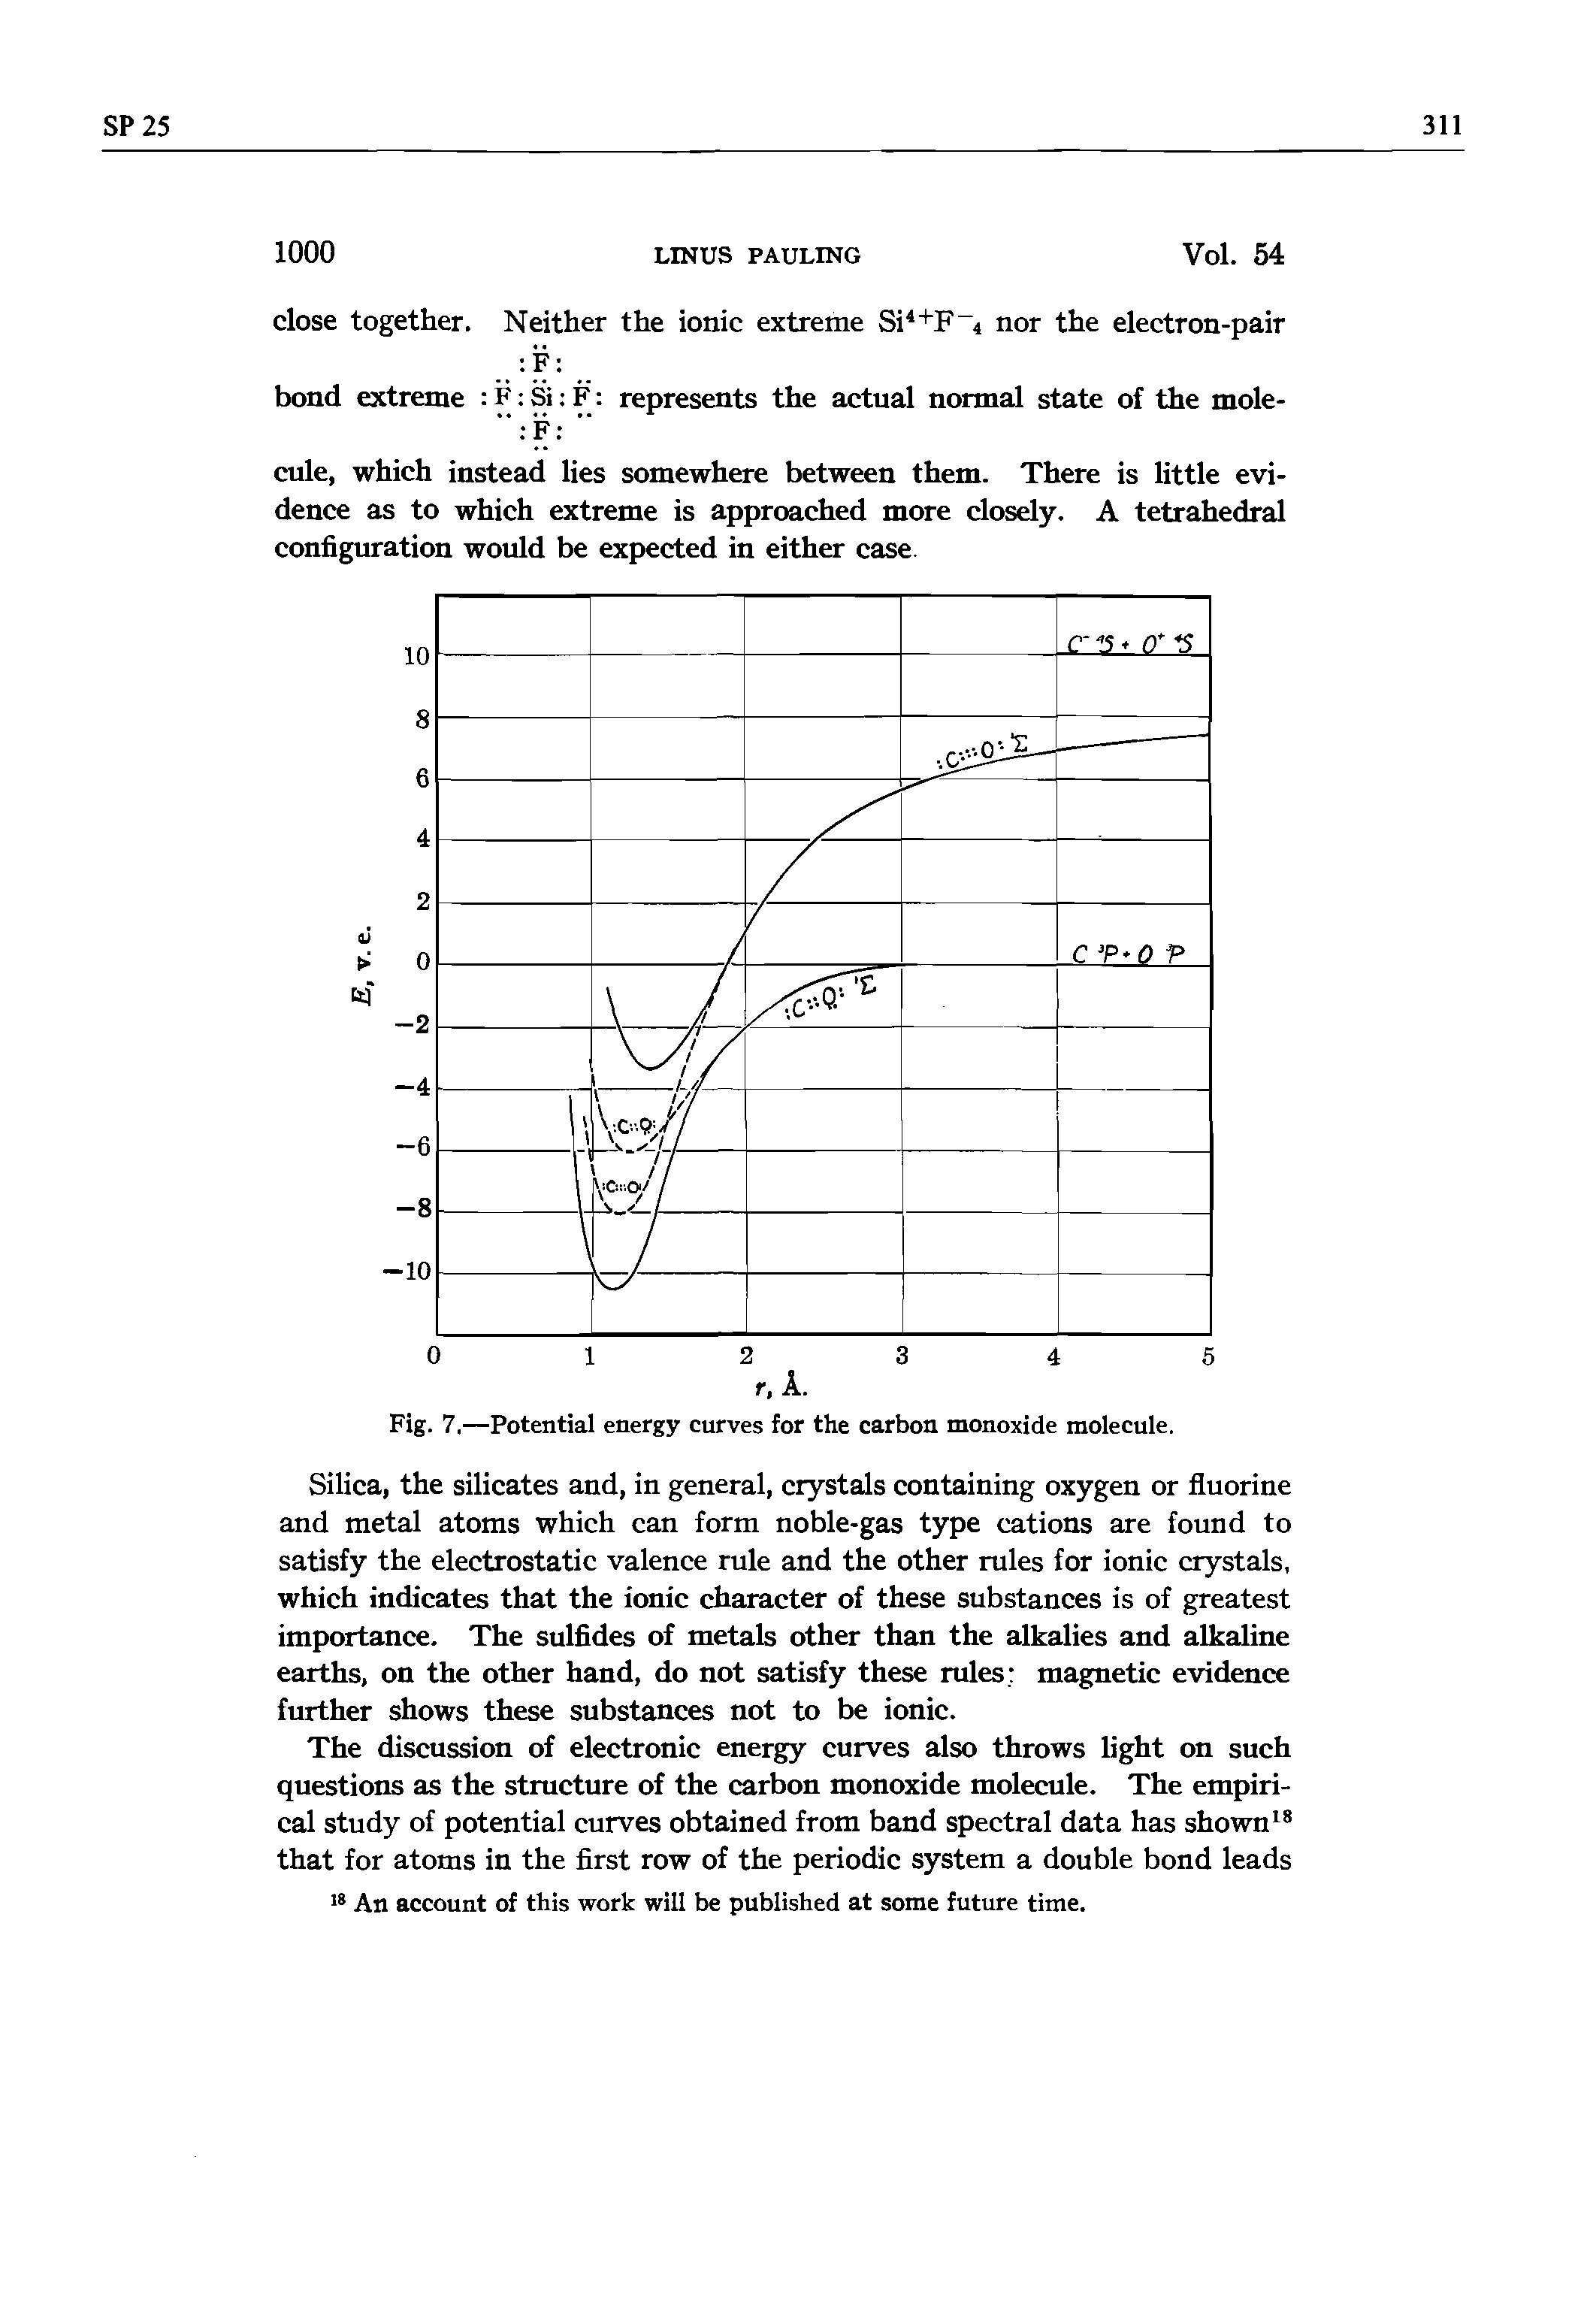 Fig. 7.—Potential energy curves for the carbon monoxide molecule.